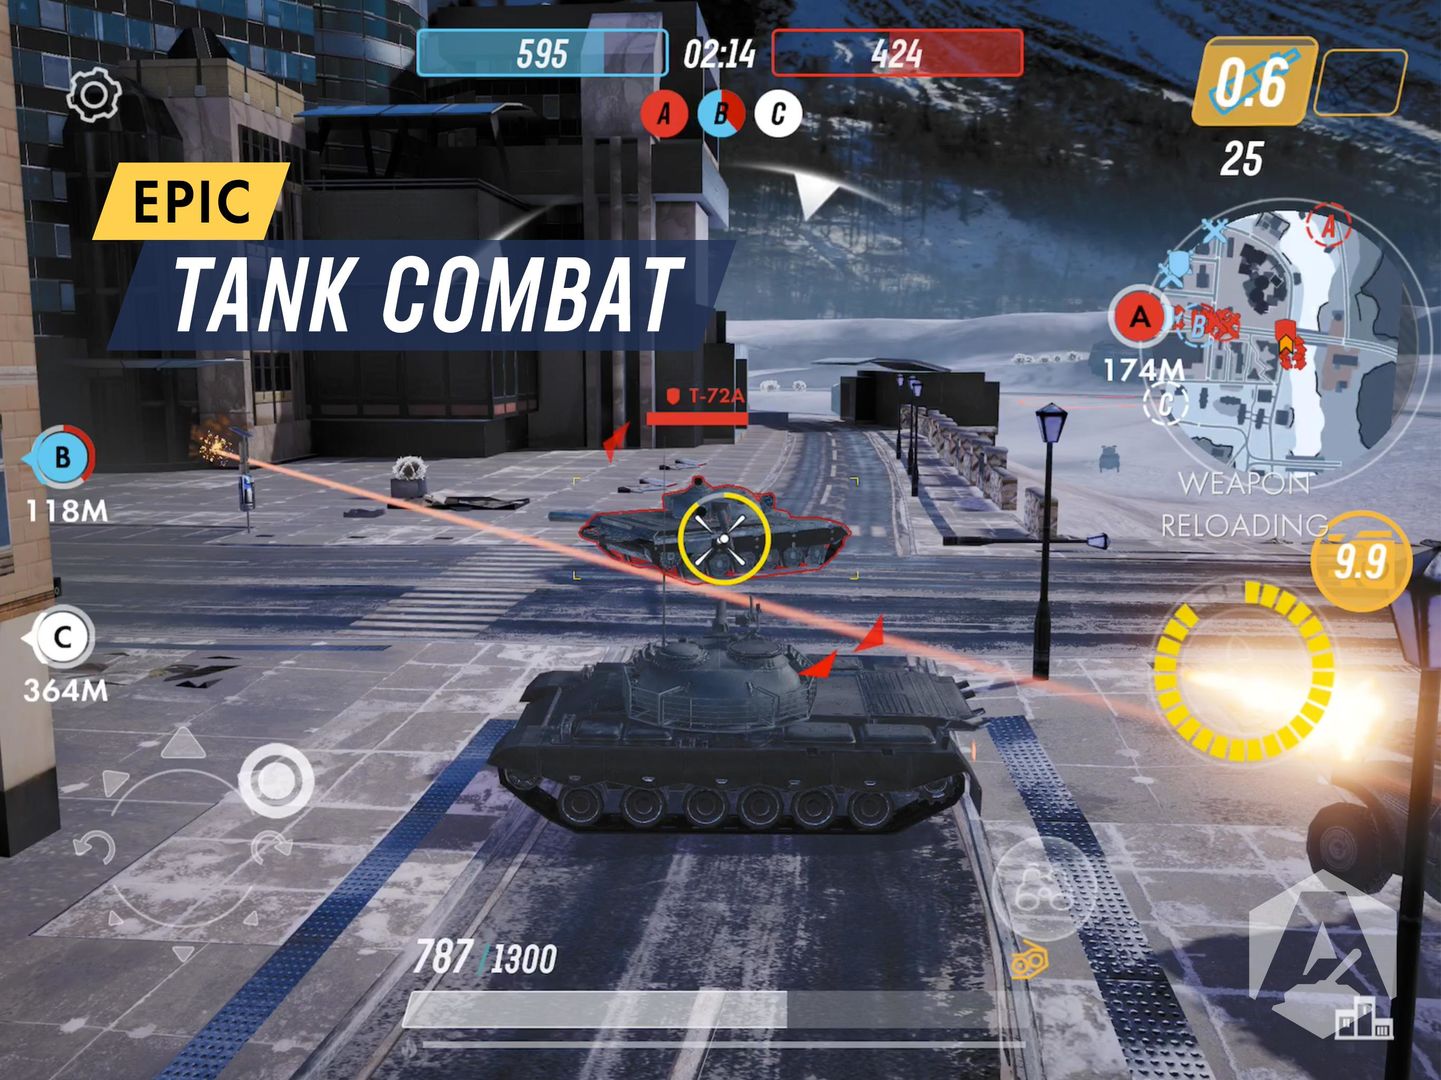 Screenshot of Armored Warfare: Assault